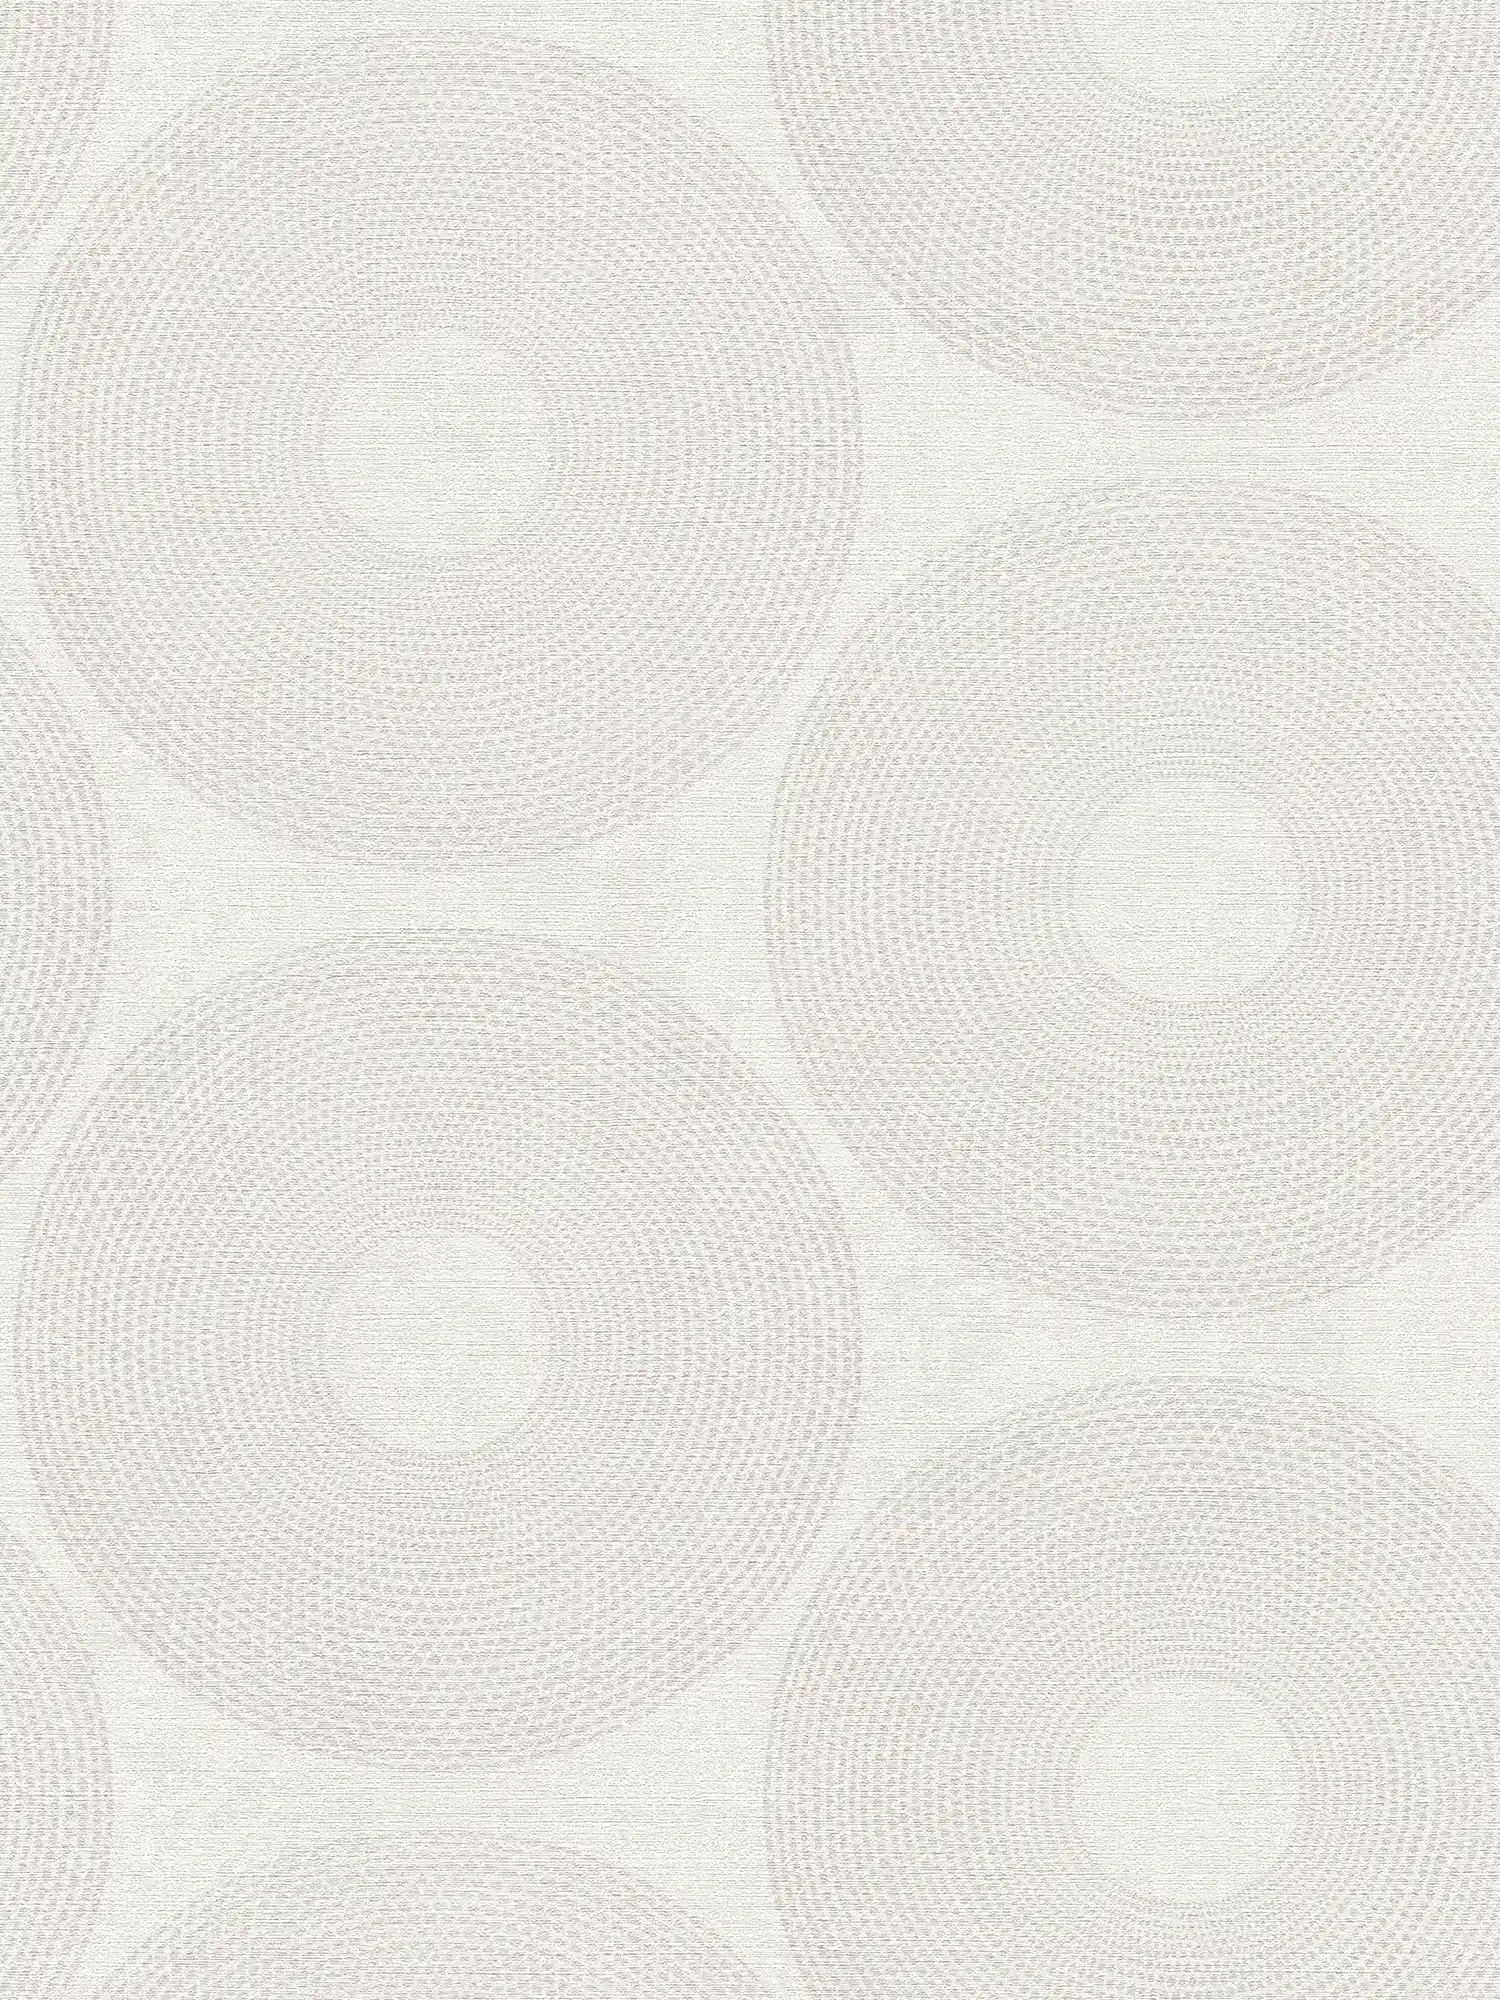 Papel pintado Ethno círculos con diseño de estructura - gris
